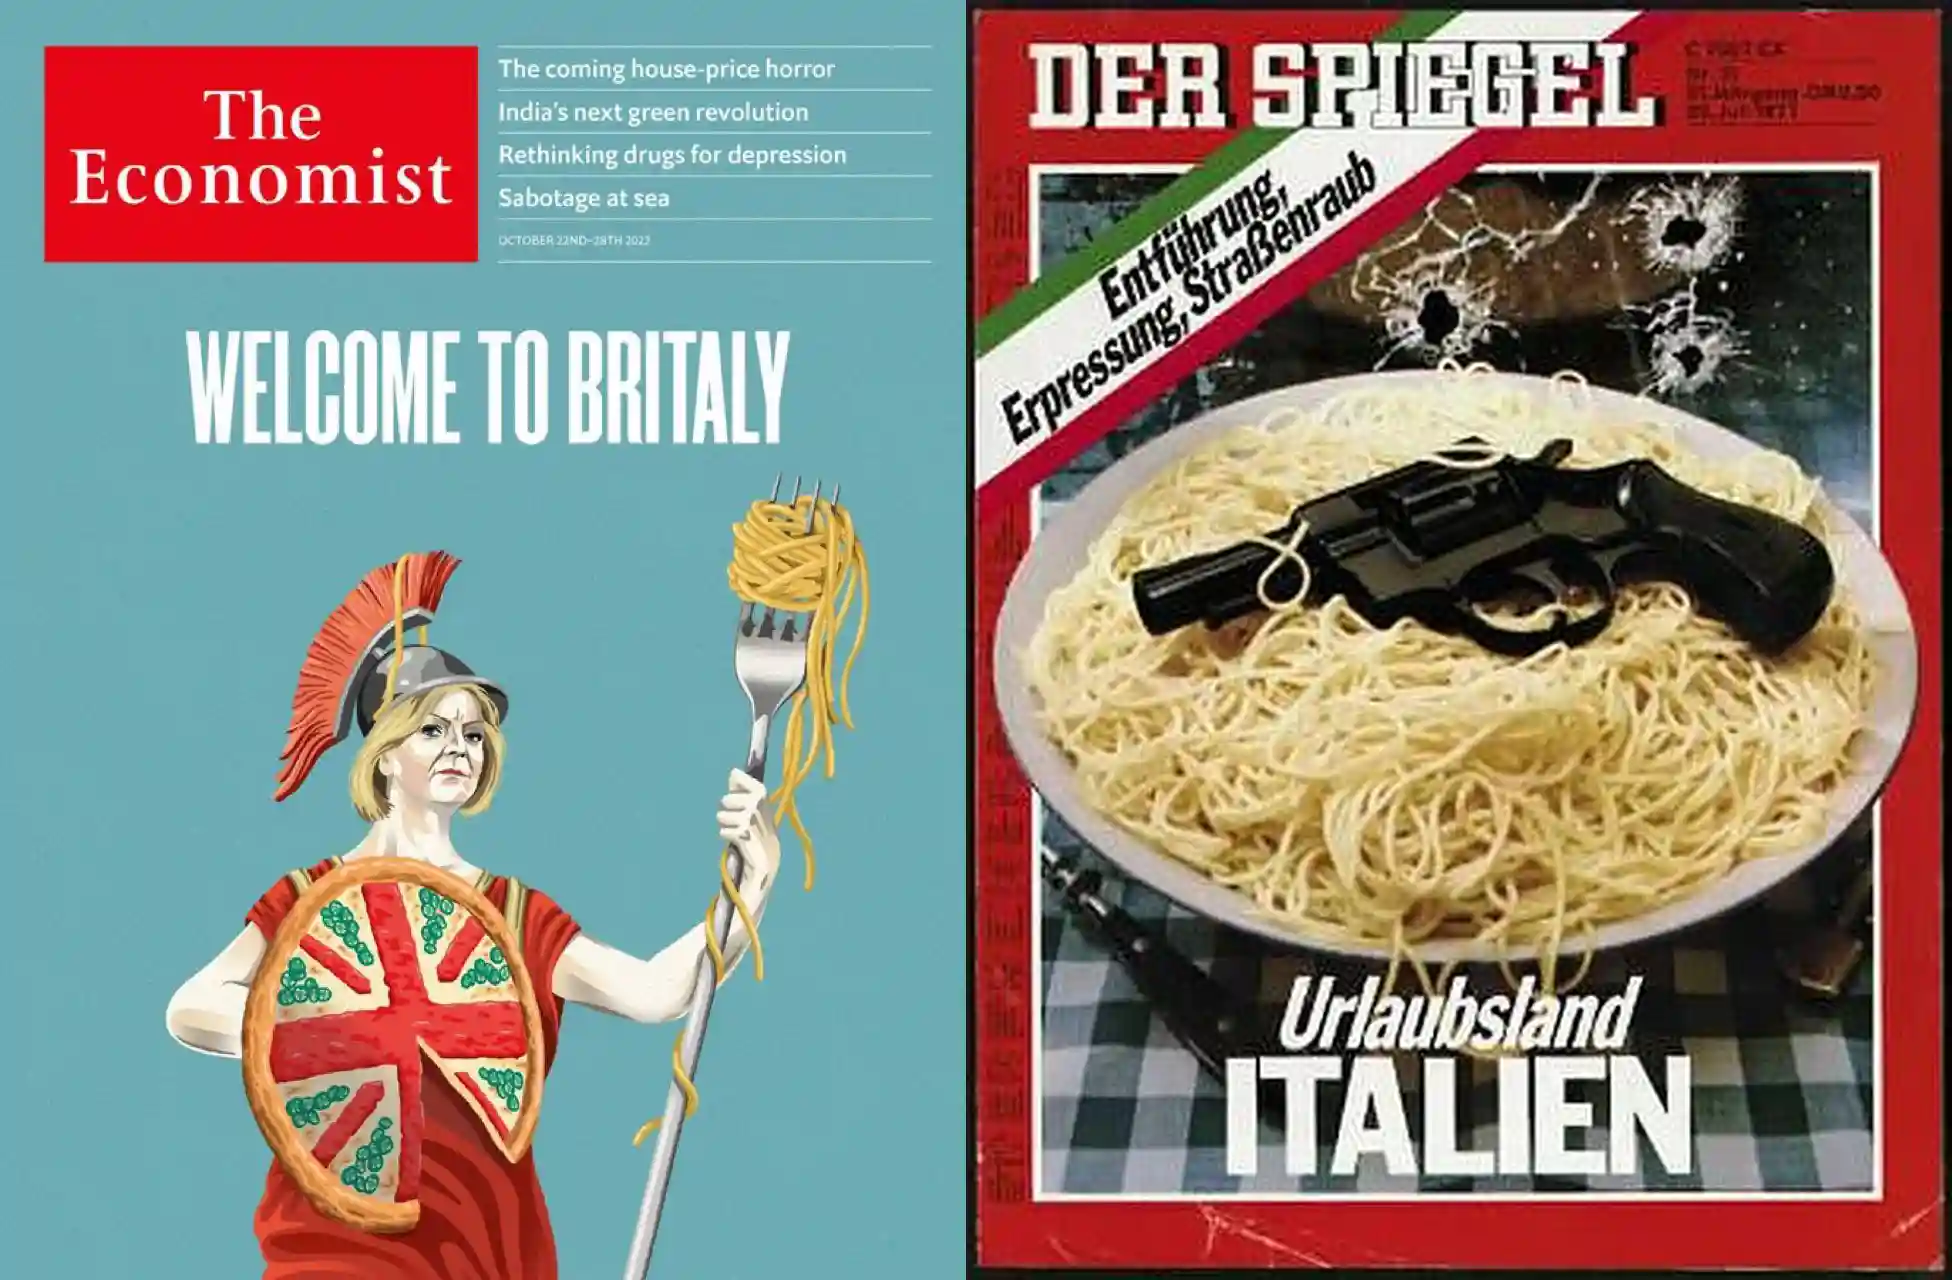 The Economist BrItaly politica vignetta Italia - Der Spiegel urlaubsland Italien